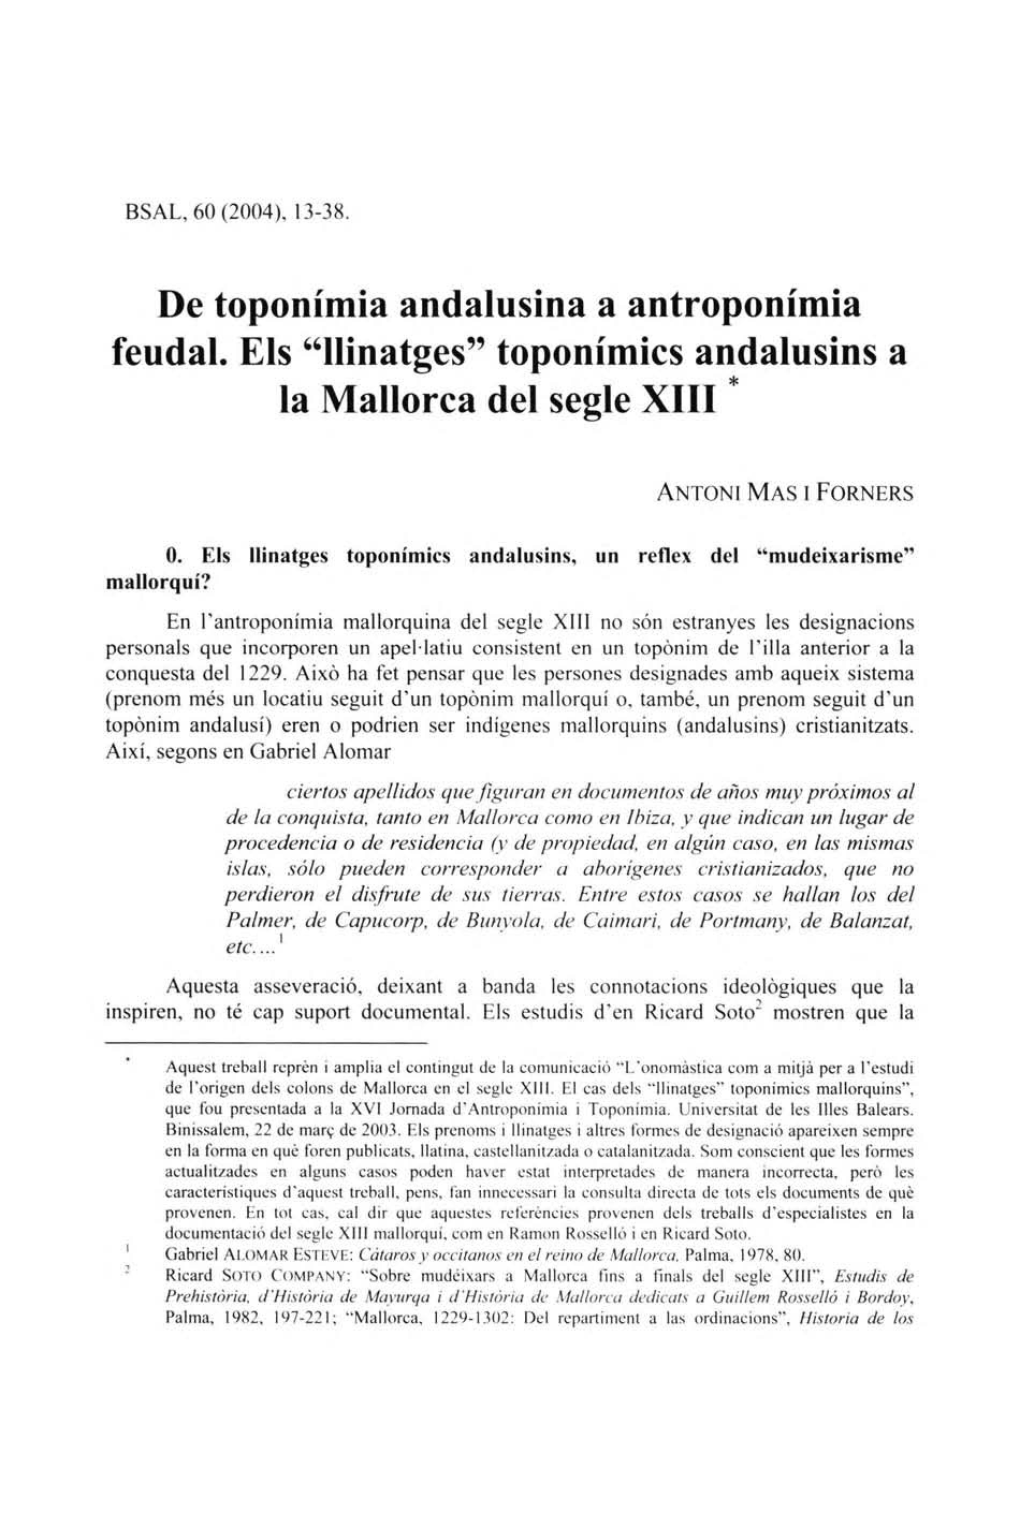 Llinatges" Toponímics Andalusins a La Mallorca Del Segle XIII *